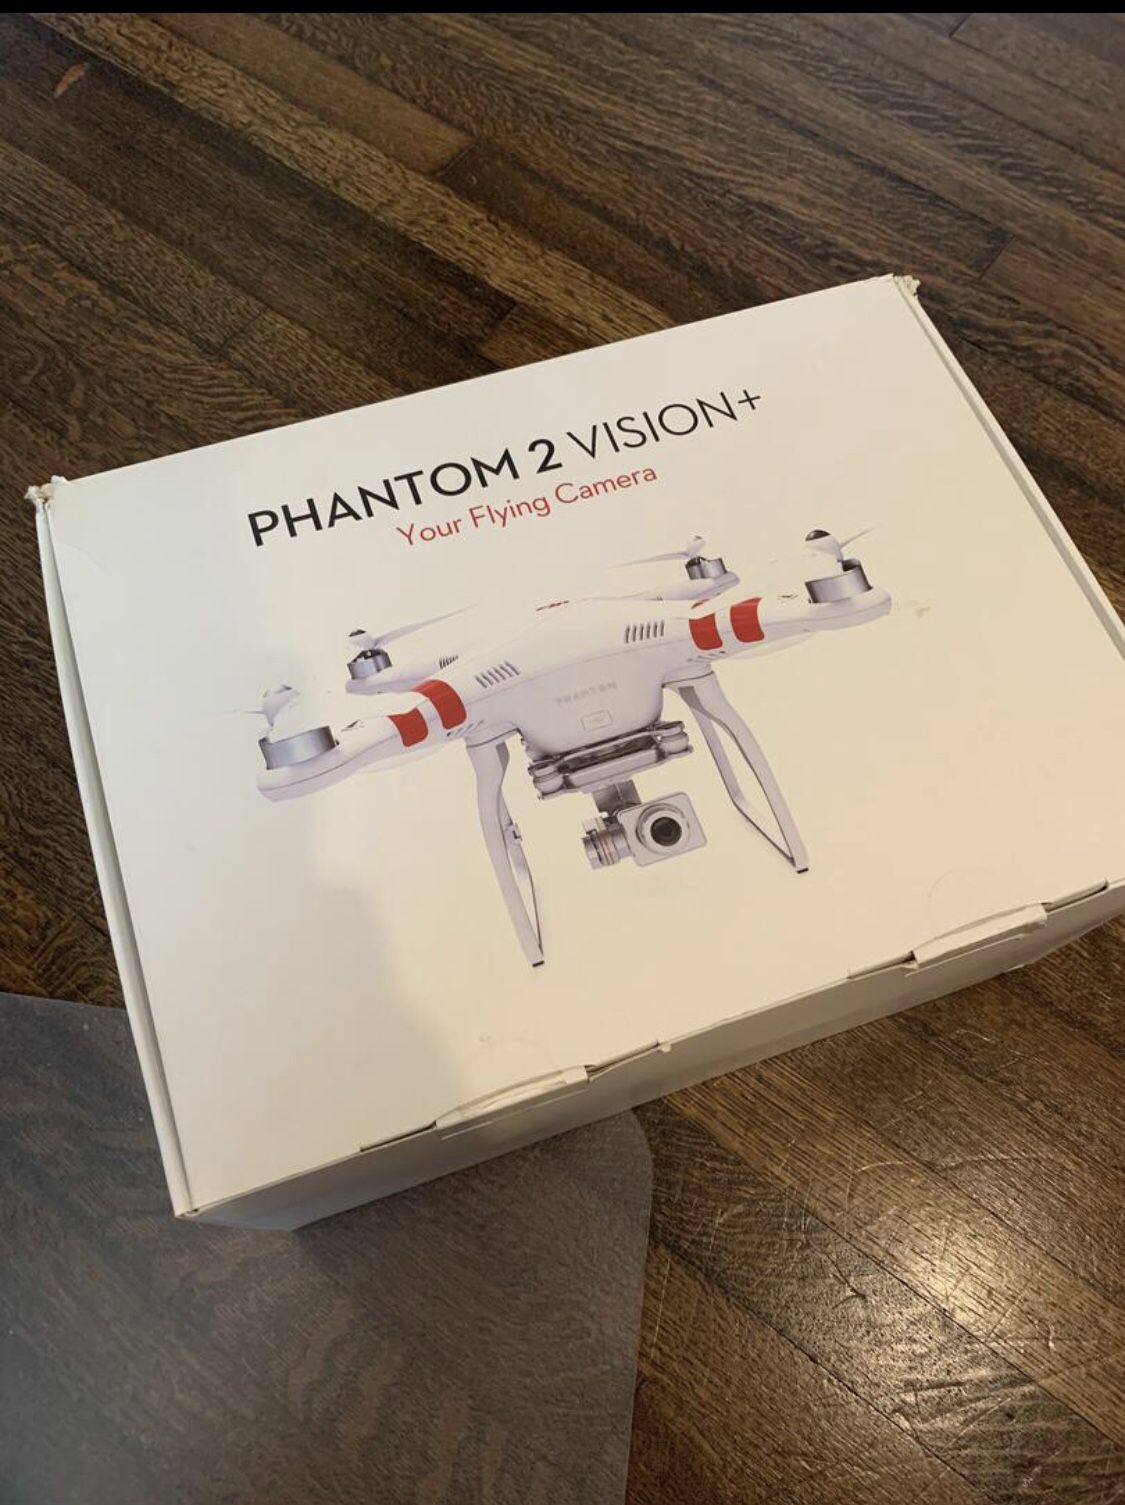 Dji phantom 2 vision plus drone